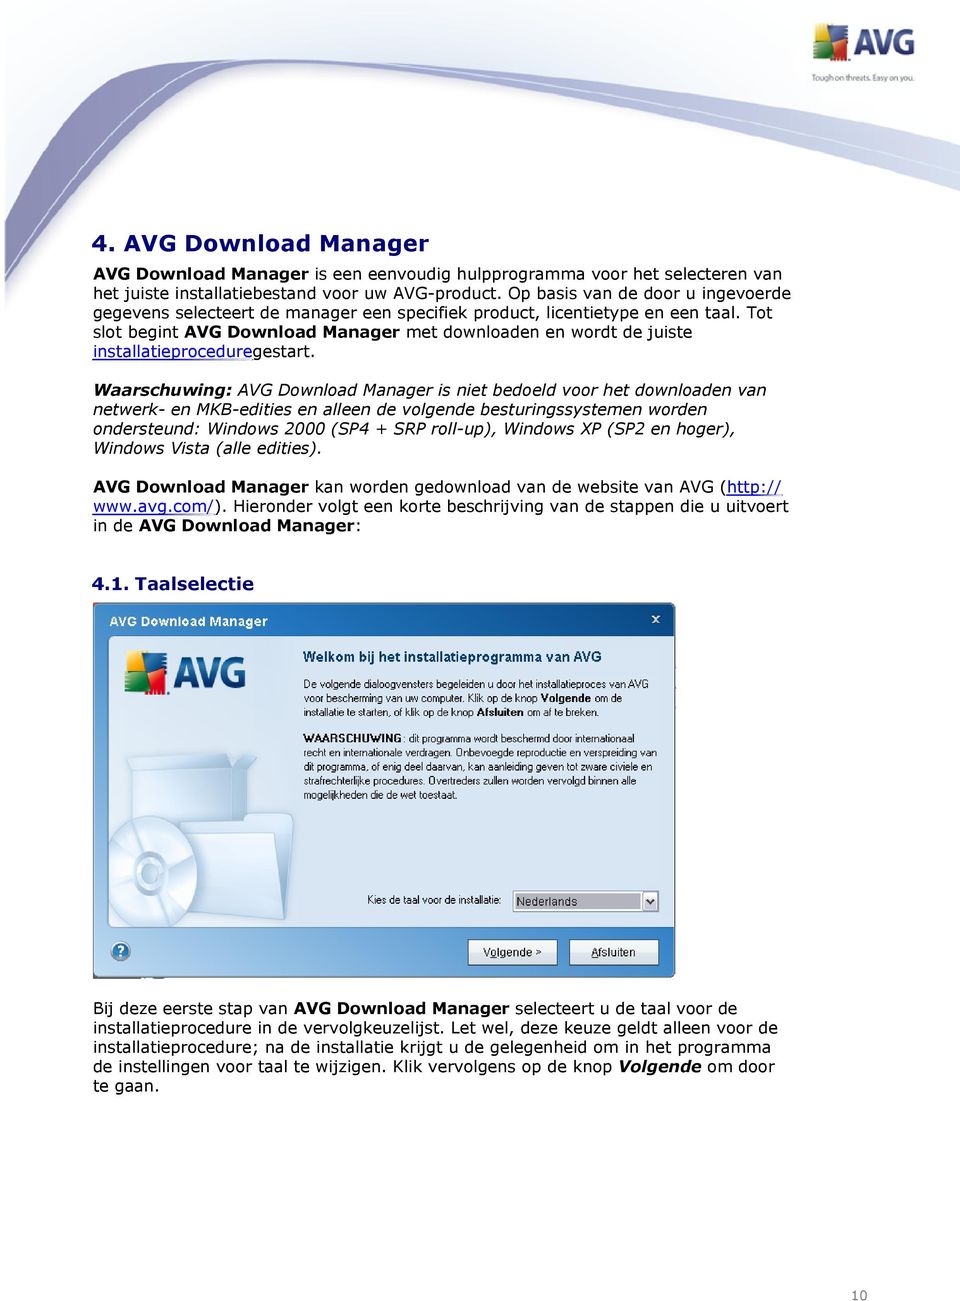 Tot slot begint AVG Download Manager met downloaden en wordt de juiste installatieproceduregestart.